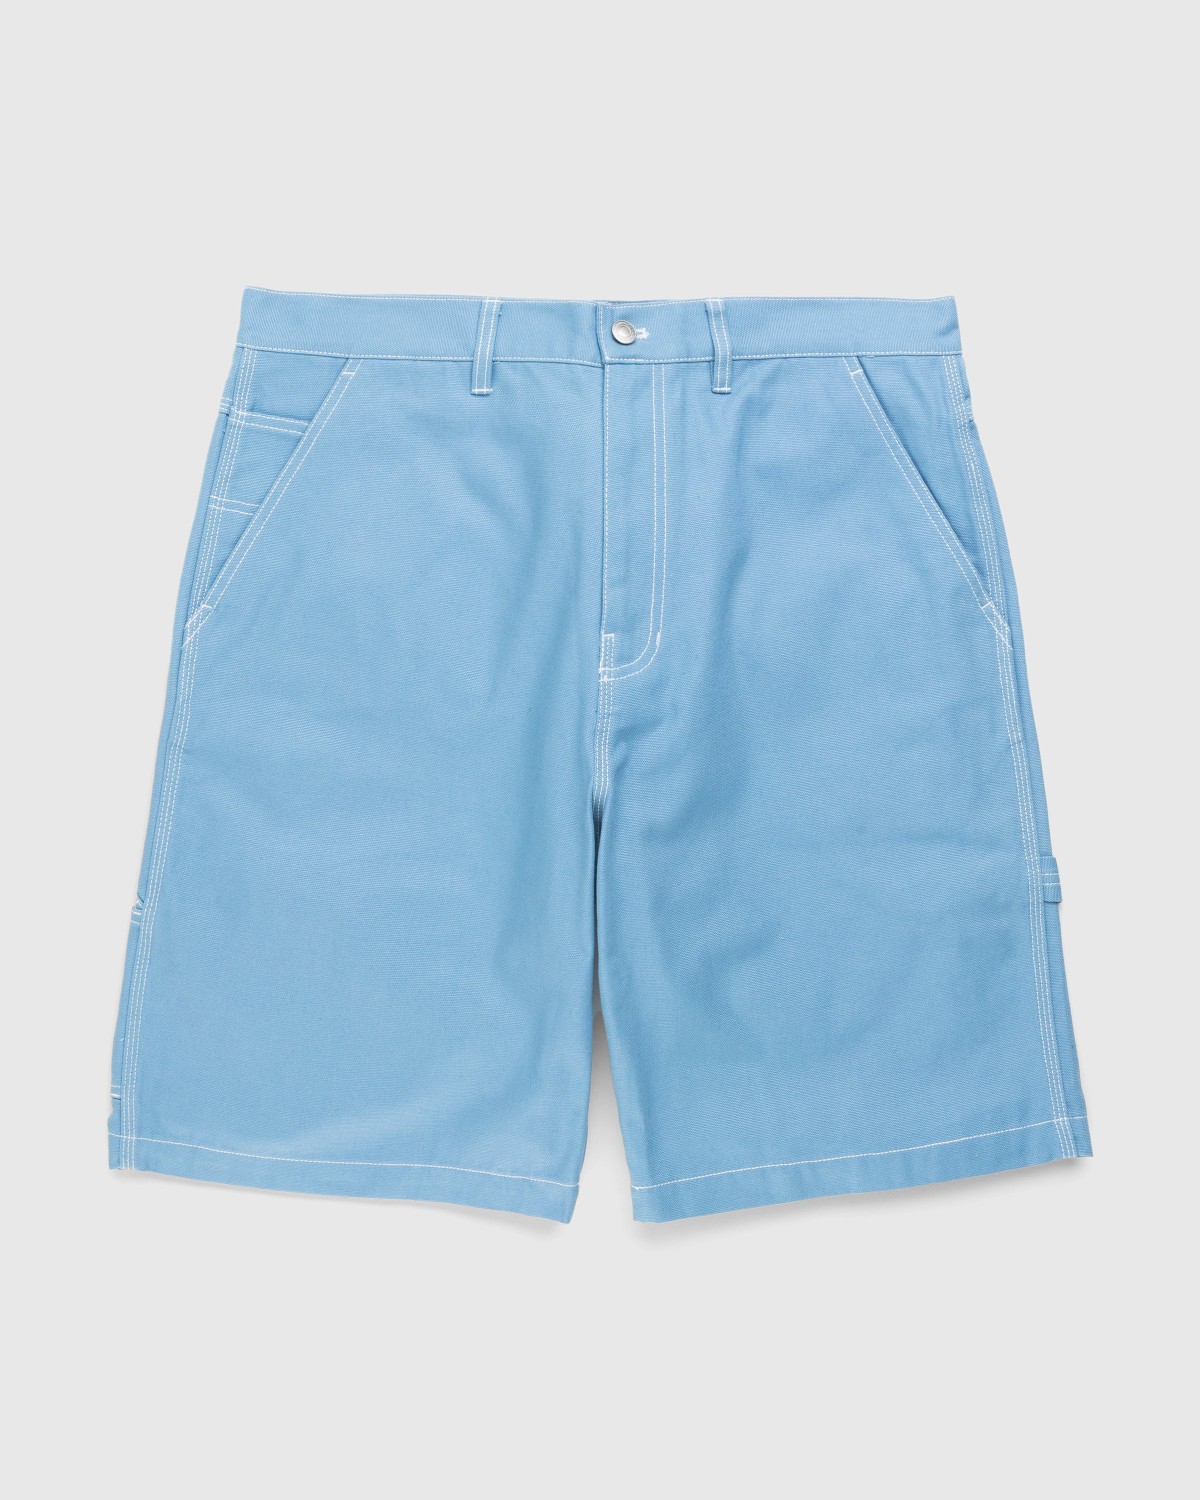 Highsnobiety – Carpenter Shorts Light Blue | Highsnobiety Shop